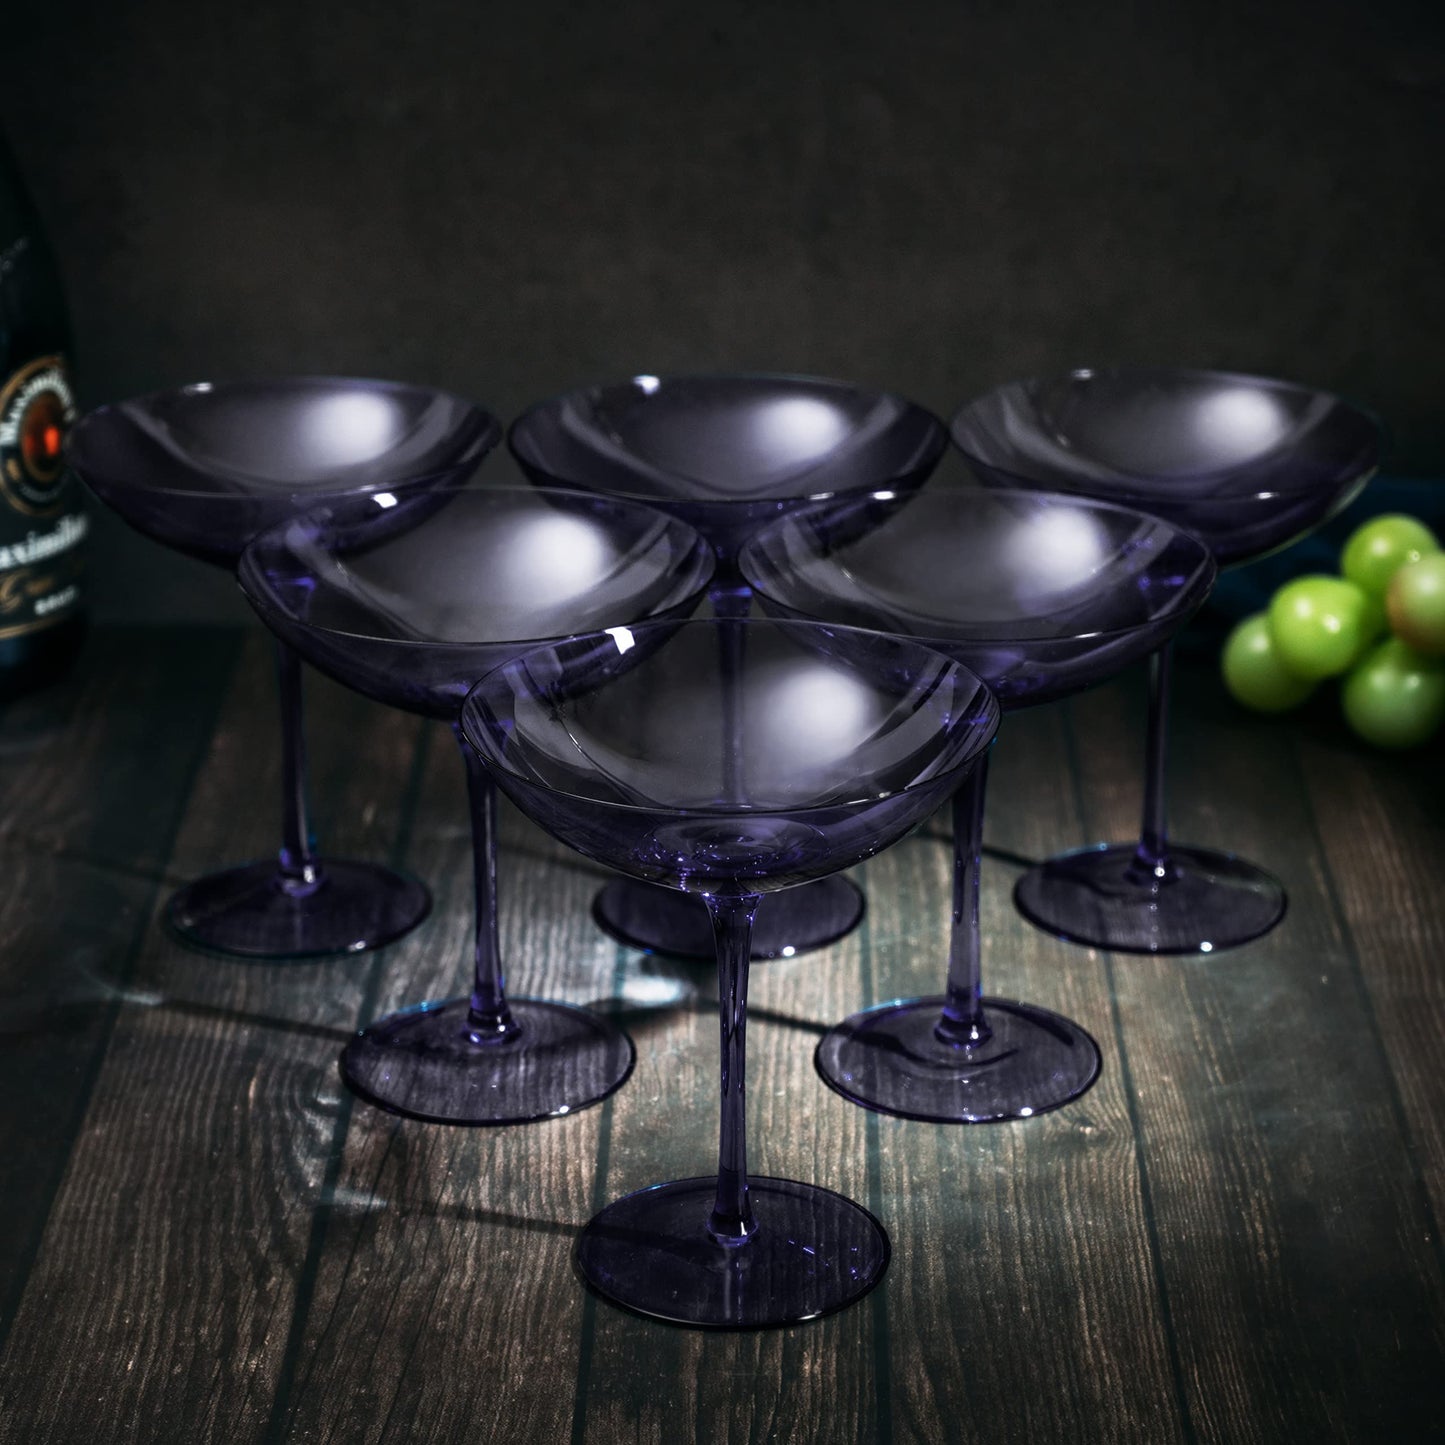 Corso Coupe Cocktail Glassware, Set of 2, Purple